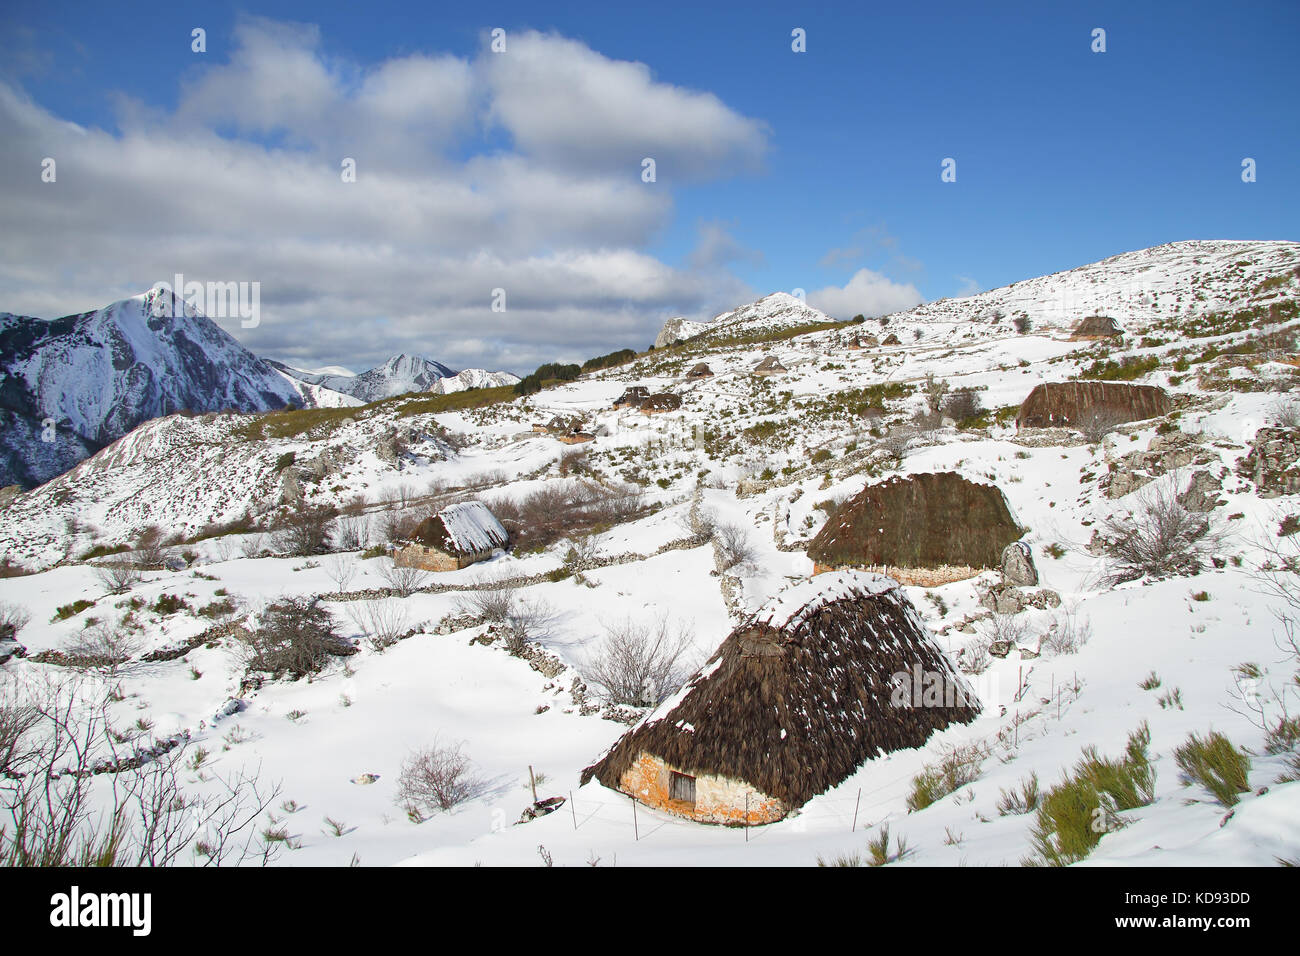 Avis de brana de mumian lors d'une journée ensoleillée d'hiver, somiedo. asturies. L'Espagne. Banque D'Images